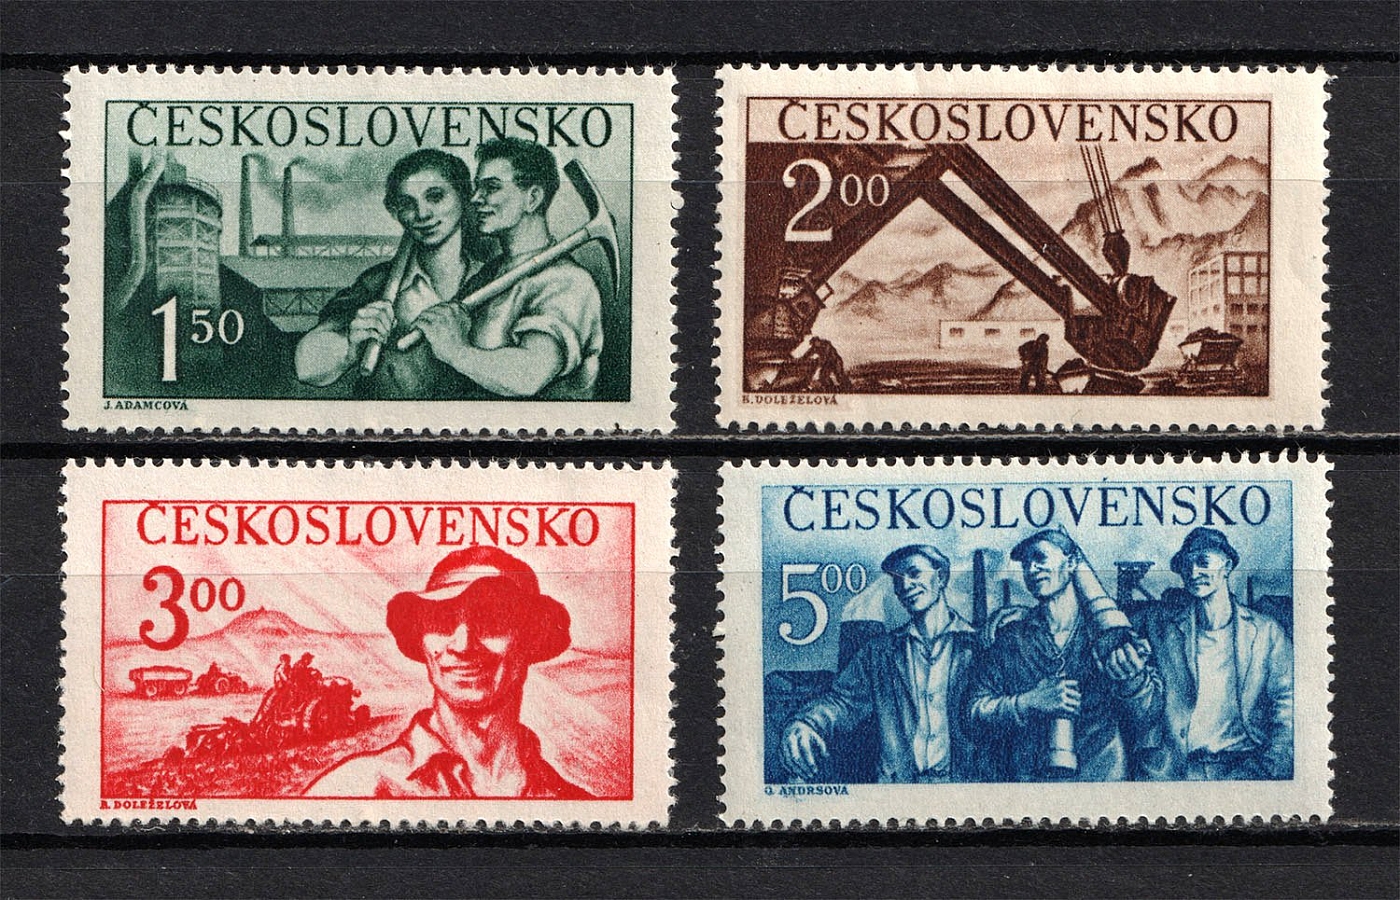 Производство чехословакии. Почтовые марки Чехословакии 1950. Экономика Чехословакии. Чехослова́кия экономика. Чехословакия 1950 годы.